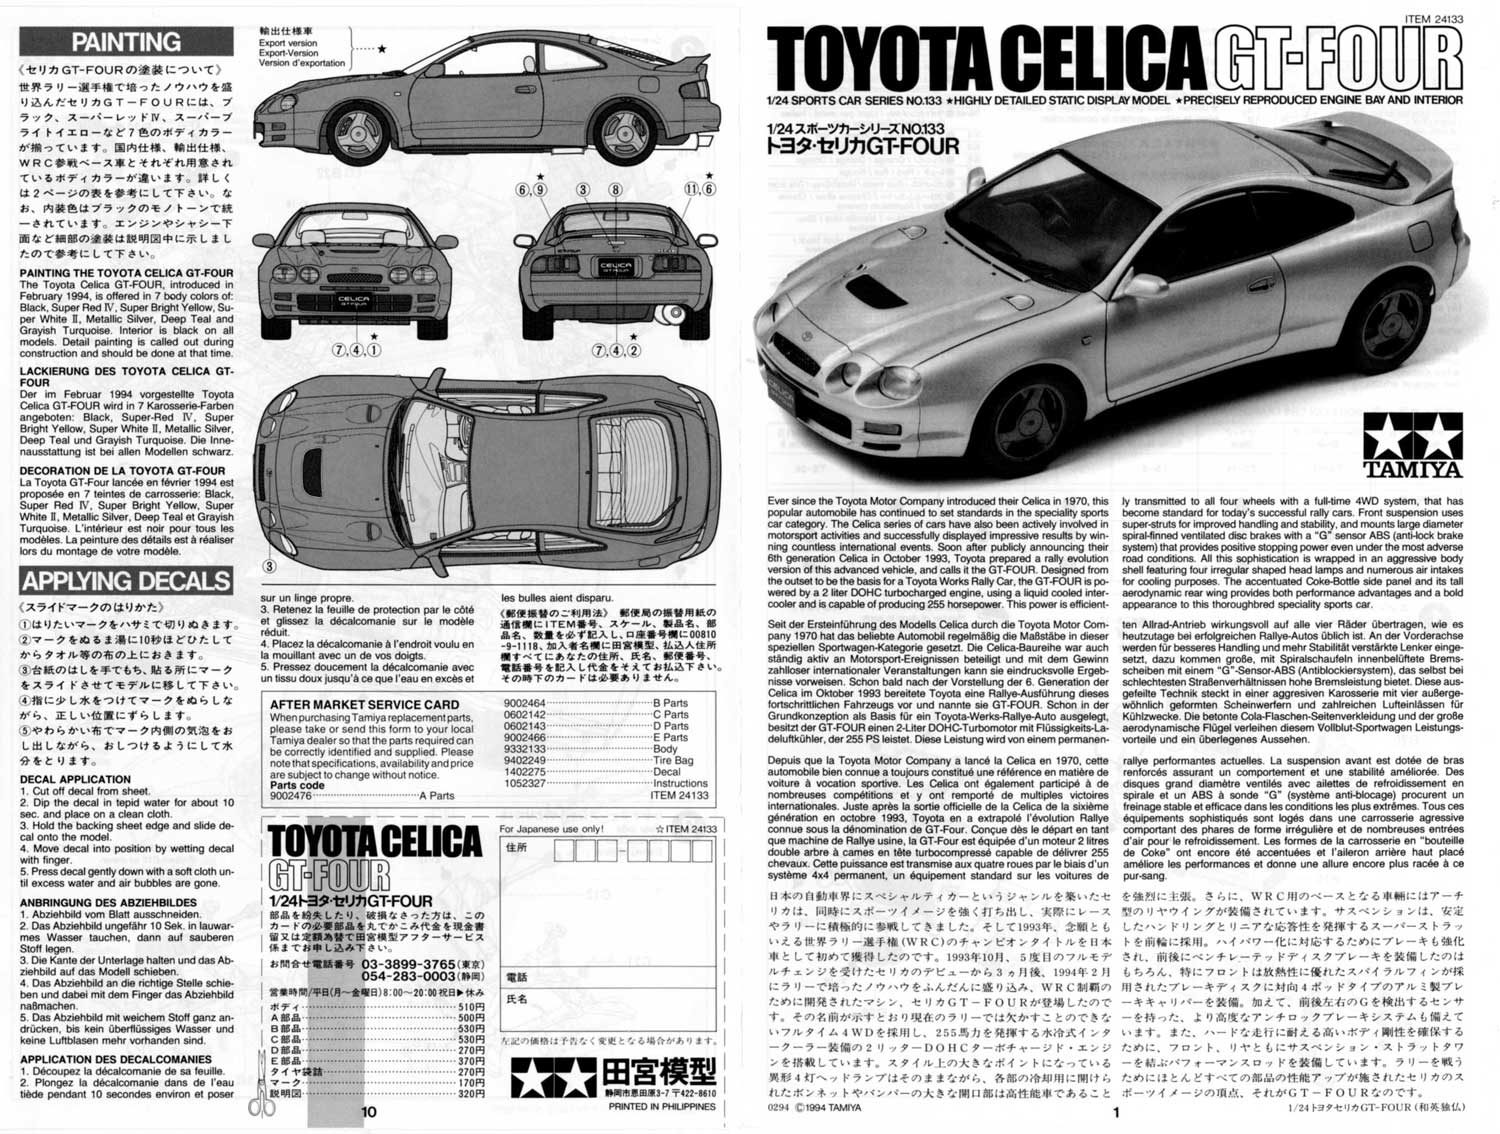 タミヤ 1/24 スポーツカーシリーズ・トヨタセリカGT-FOUR・塗装